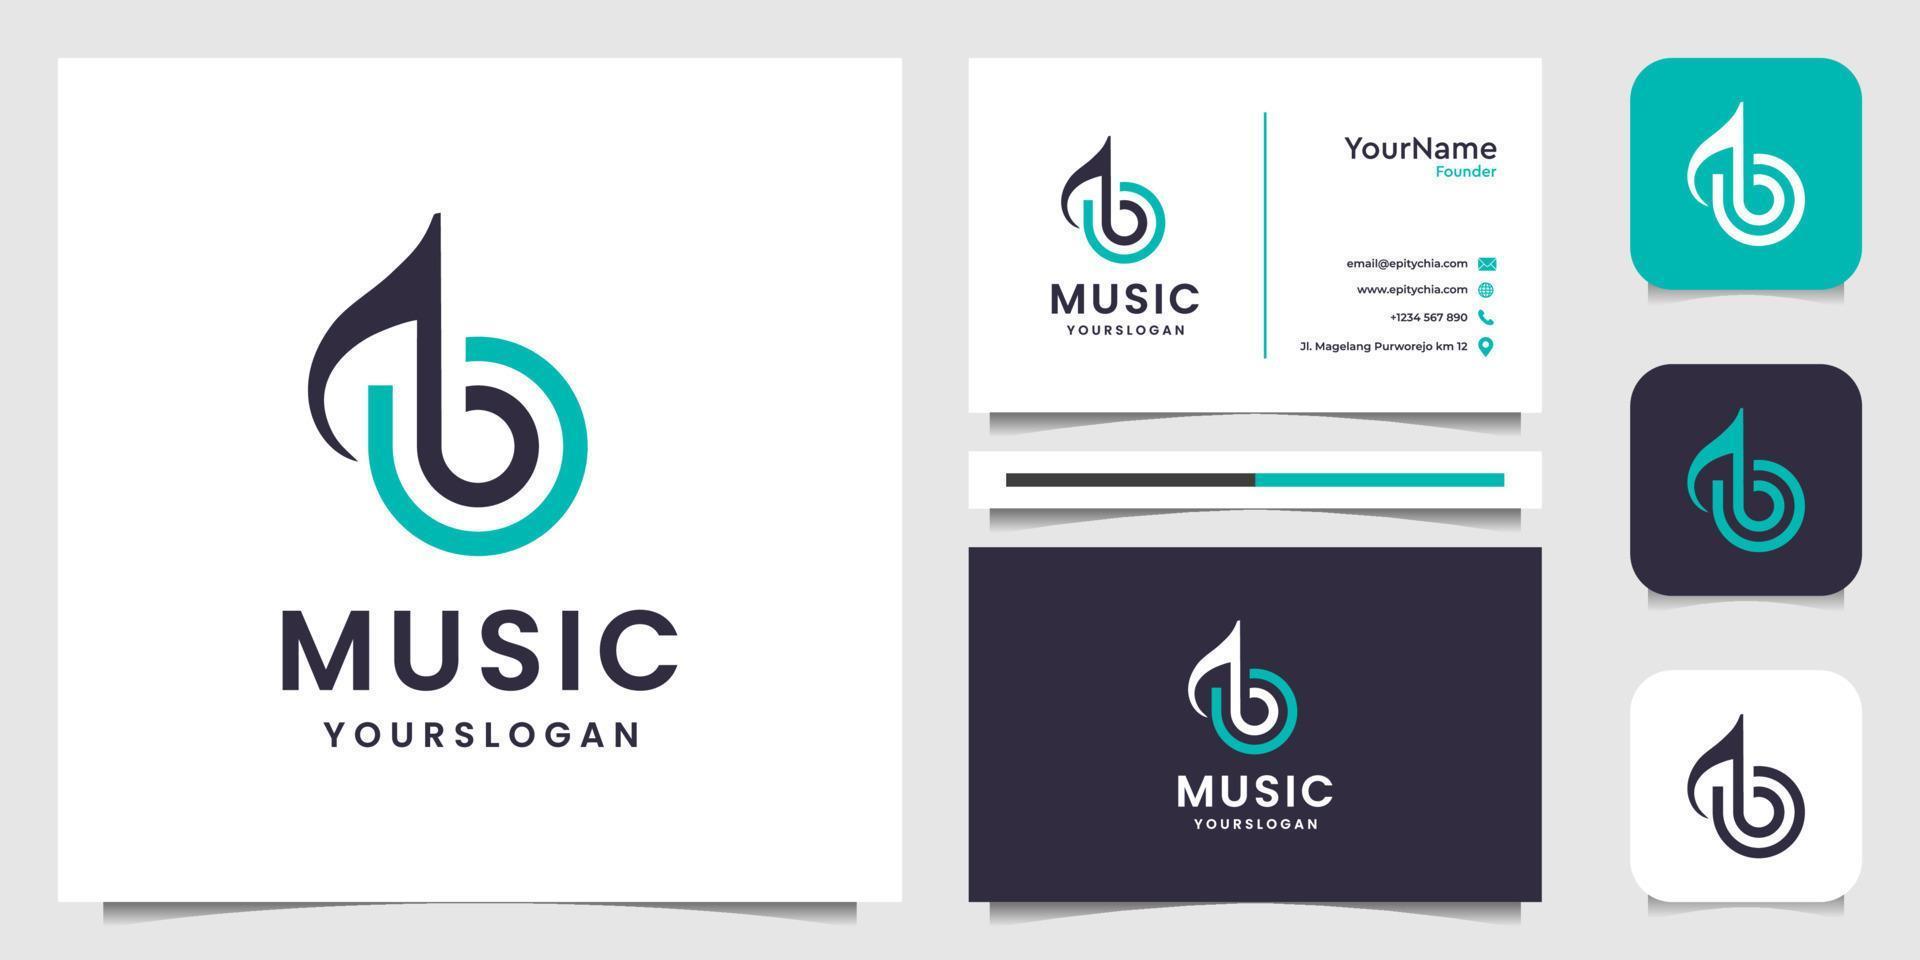 Musiknote modernes Logo illustraction Vektorgrafik-Design-Vorlage. gut für Geschäft, Unternehmen, Symbol, Modern, Technologie, Internet, Marke, Werbung und Visitenkarte vektor